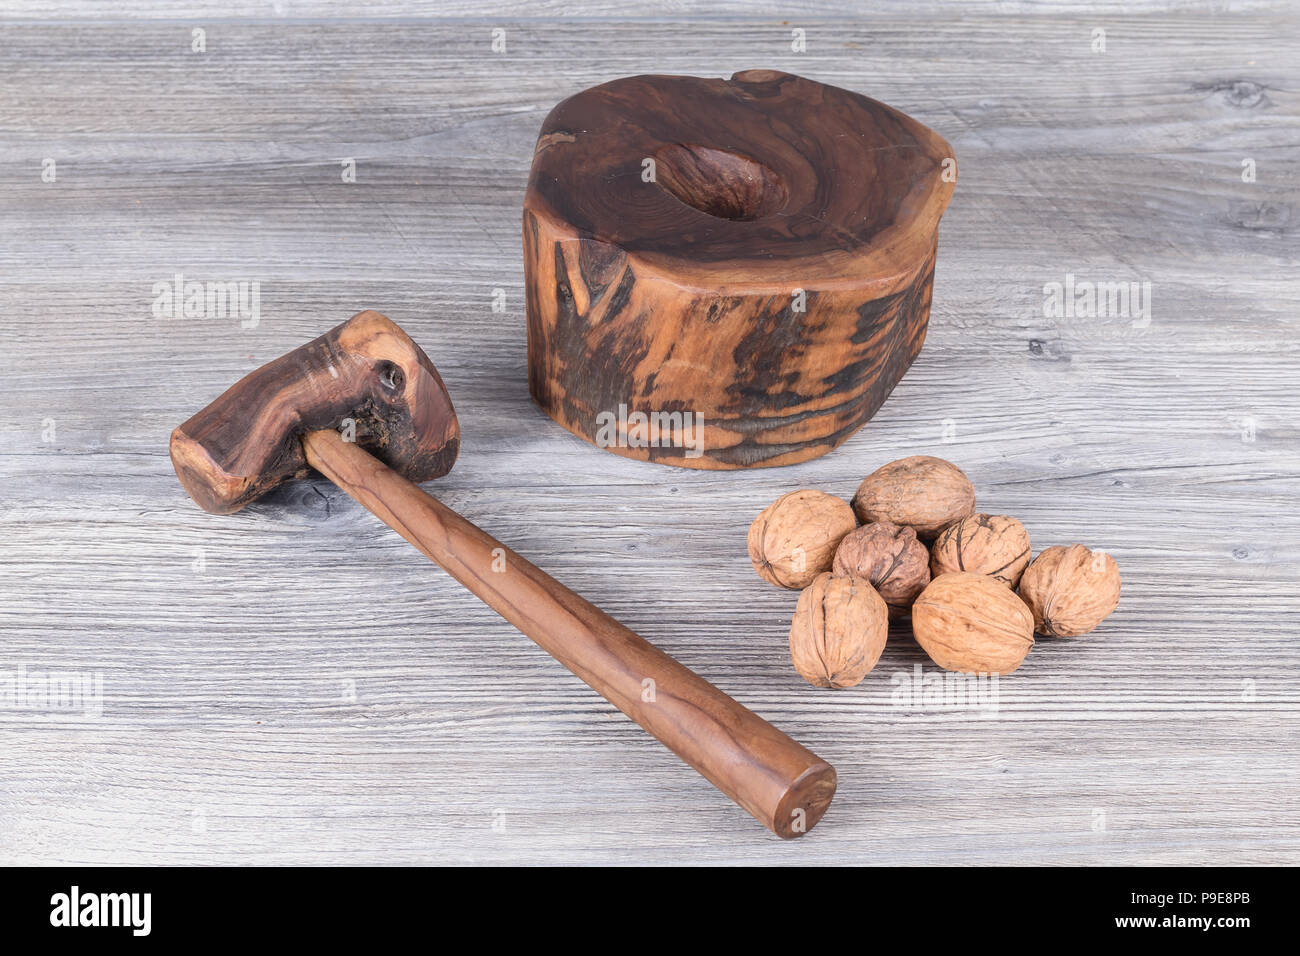 Hammer Nussknacker und Walnüsse auf grau anthrazit Holz im Hintergrund  Stockfotografie - Alamy